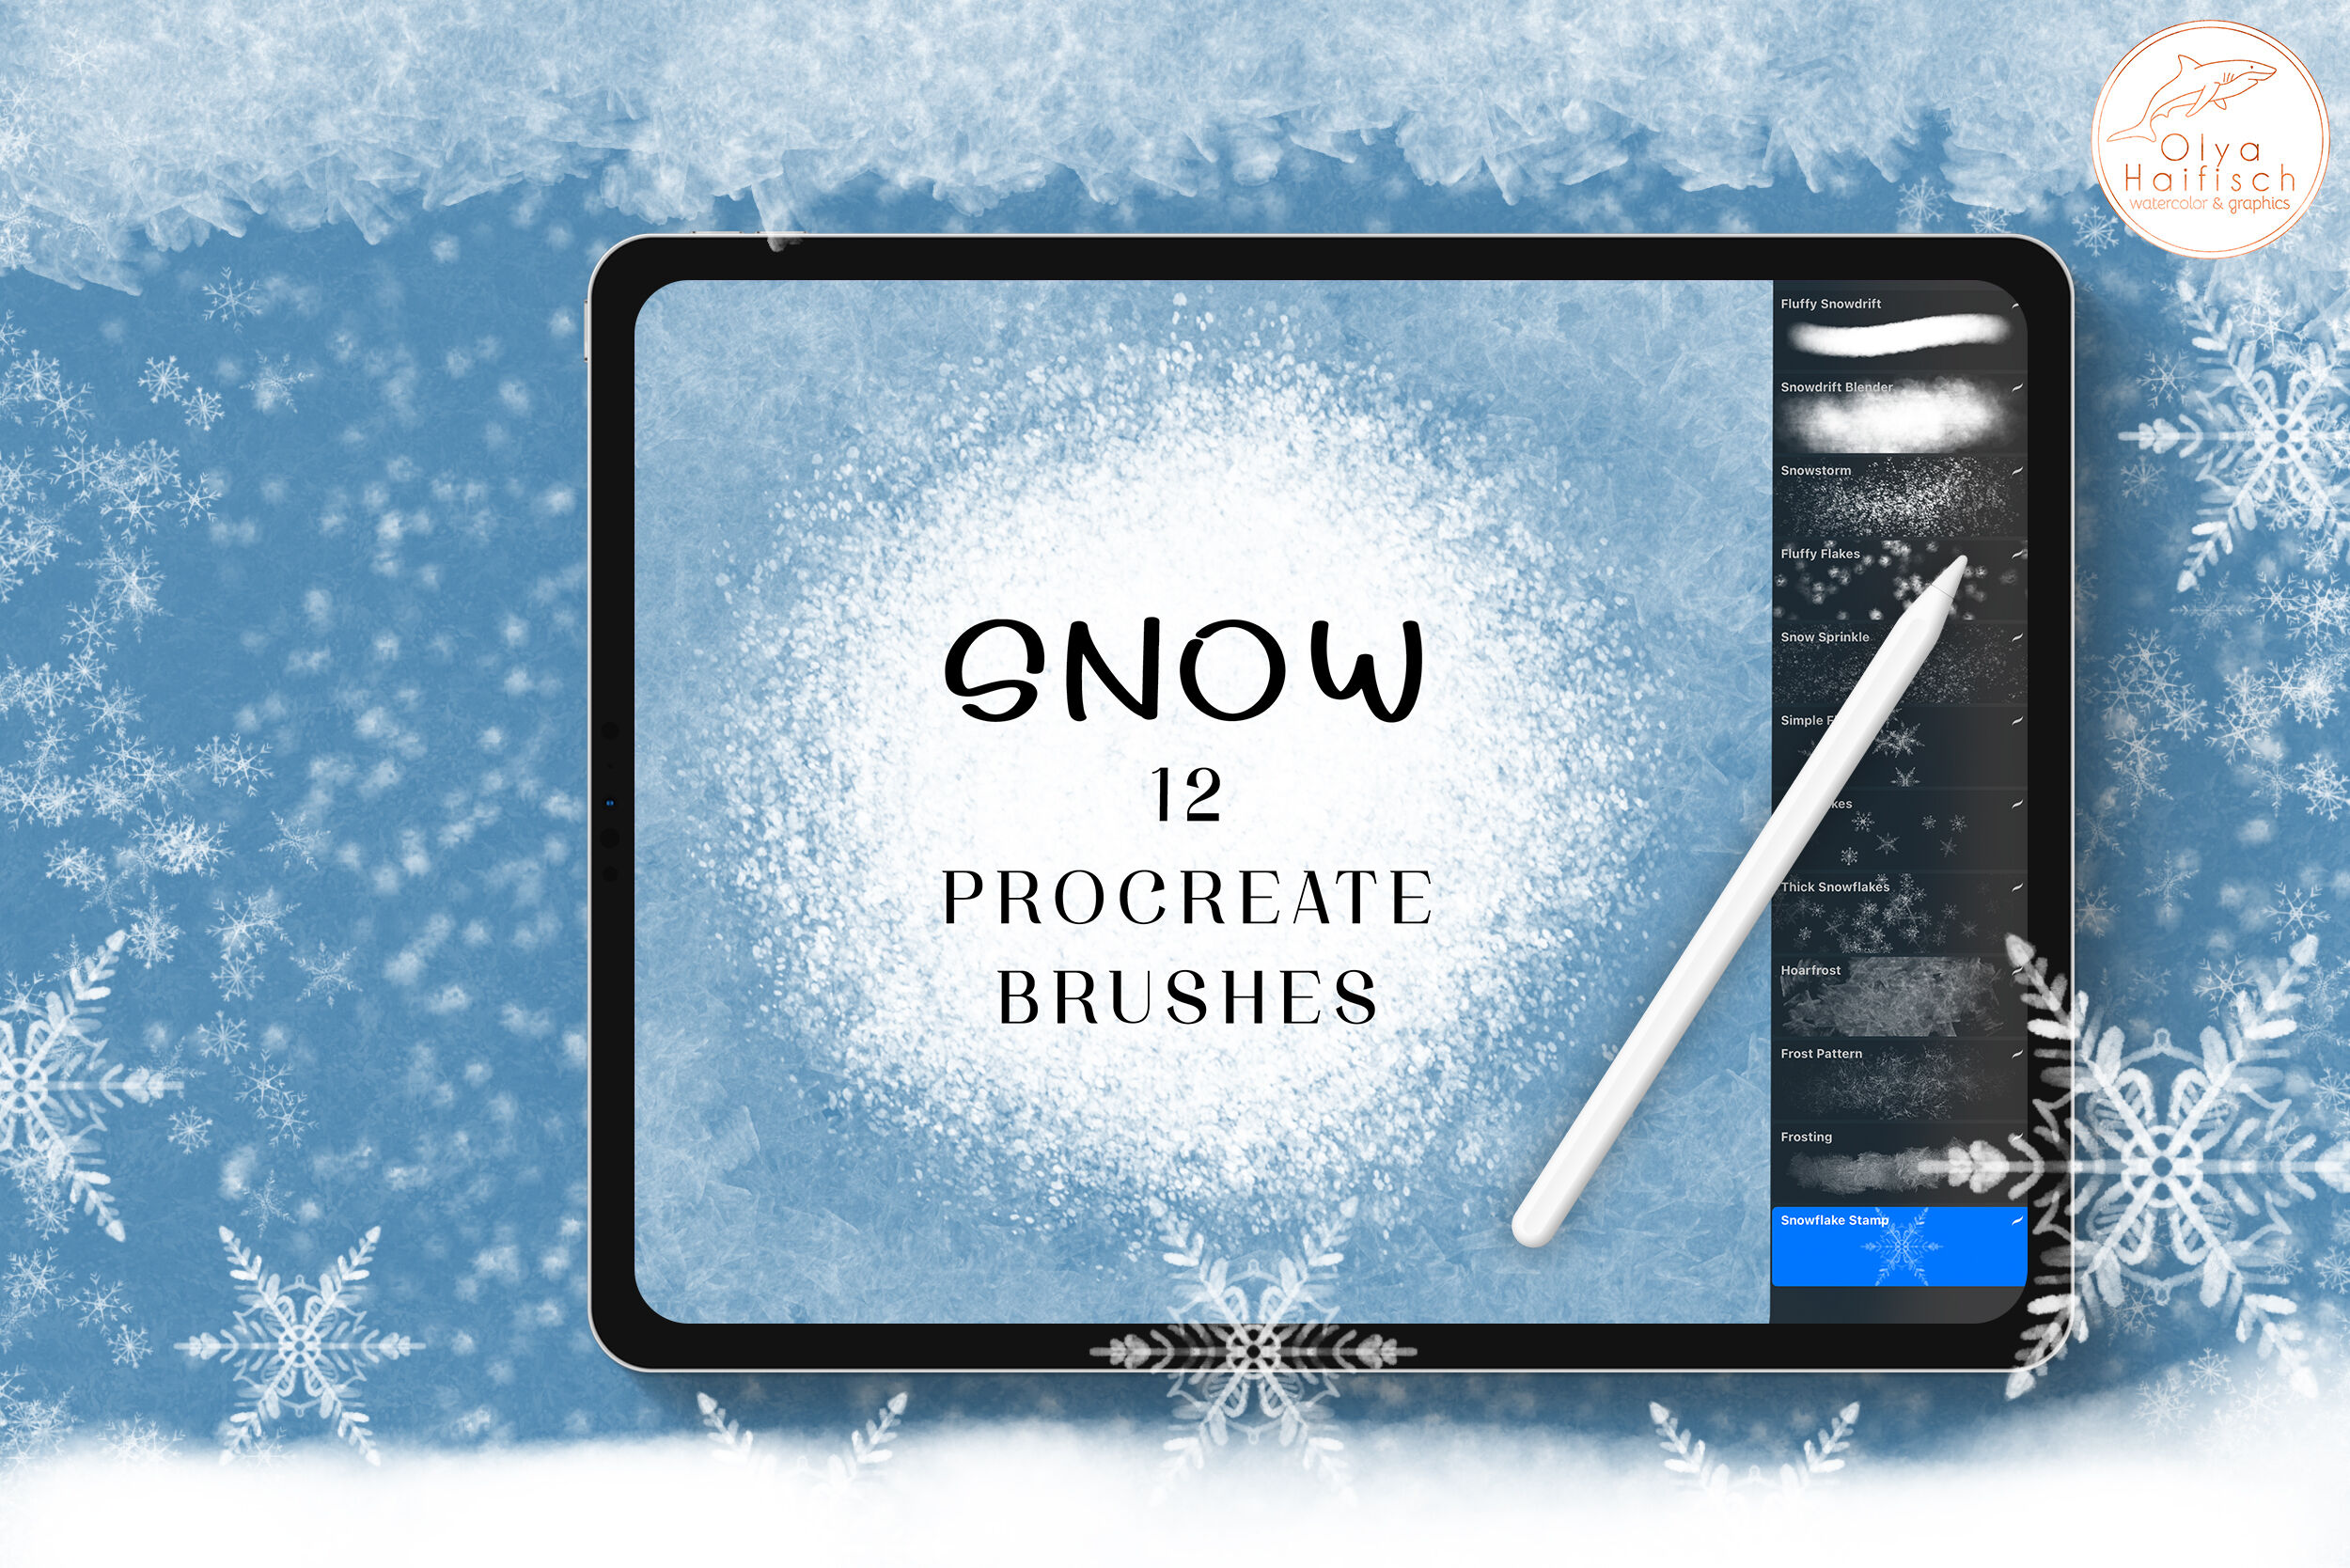 ice brush procreate free